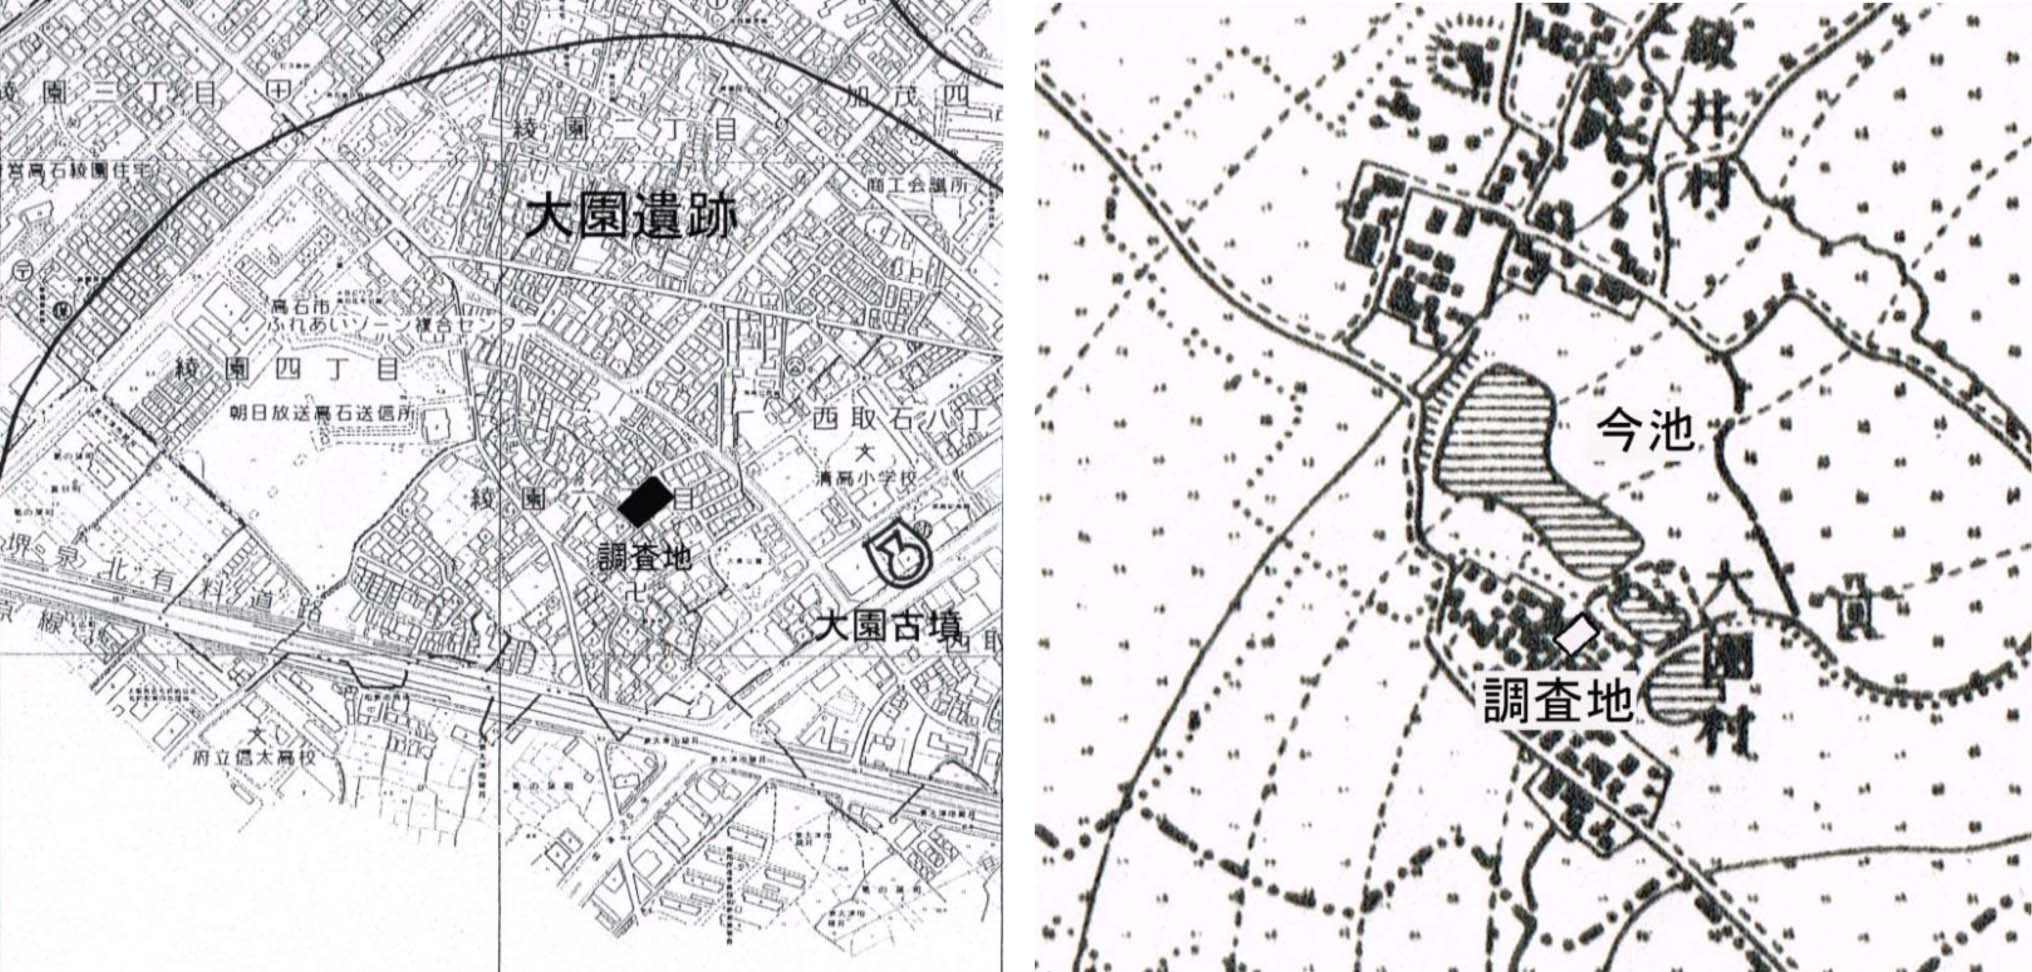 【図】発掘調査地位置図と明治時代の地図に調査地をおとした図面